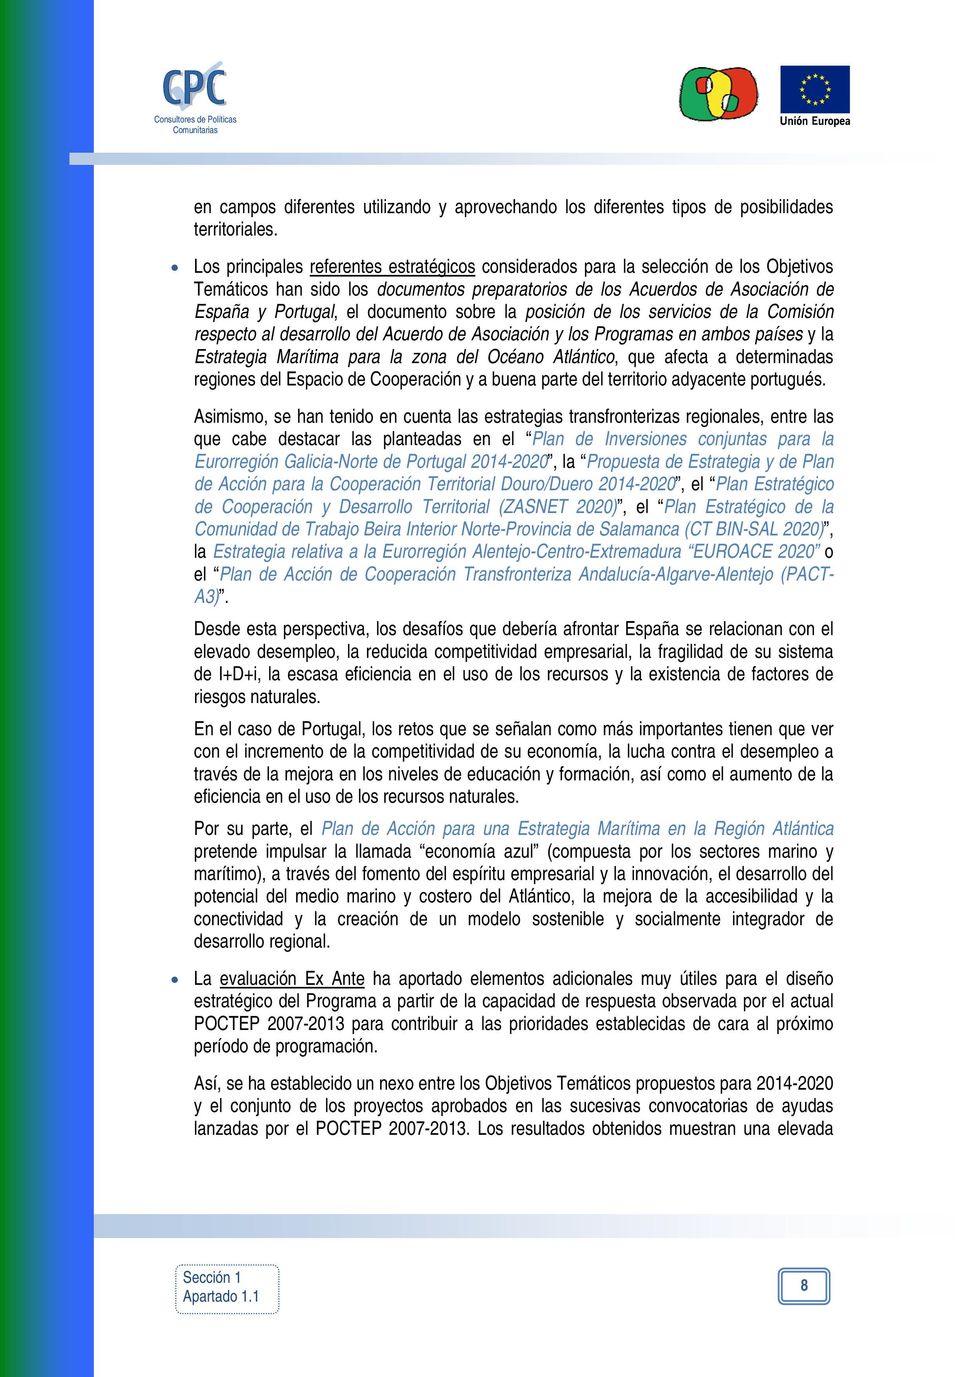 documento sobre la posición de los servicios de la Comisión respecto al desarrollo del Acuerdo de Asociación y los Programas en ambos países y la Estrategia Marítima para la zona del Océano